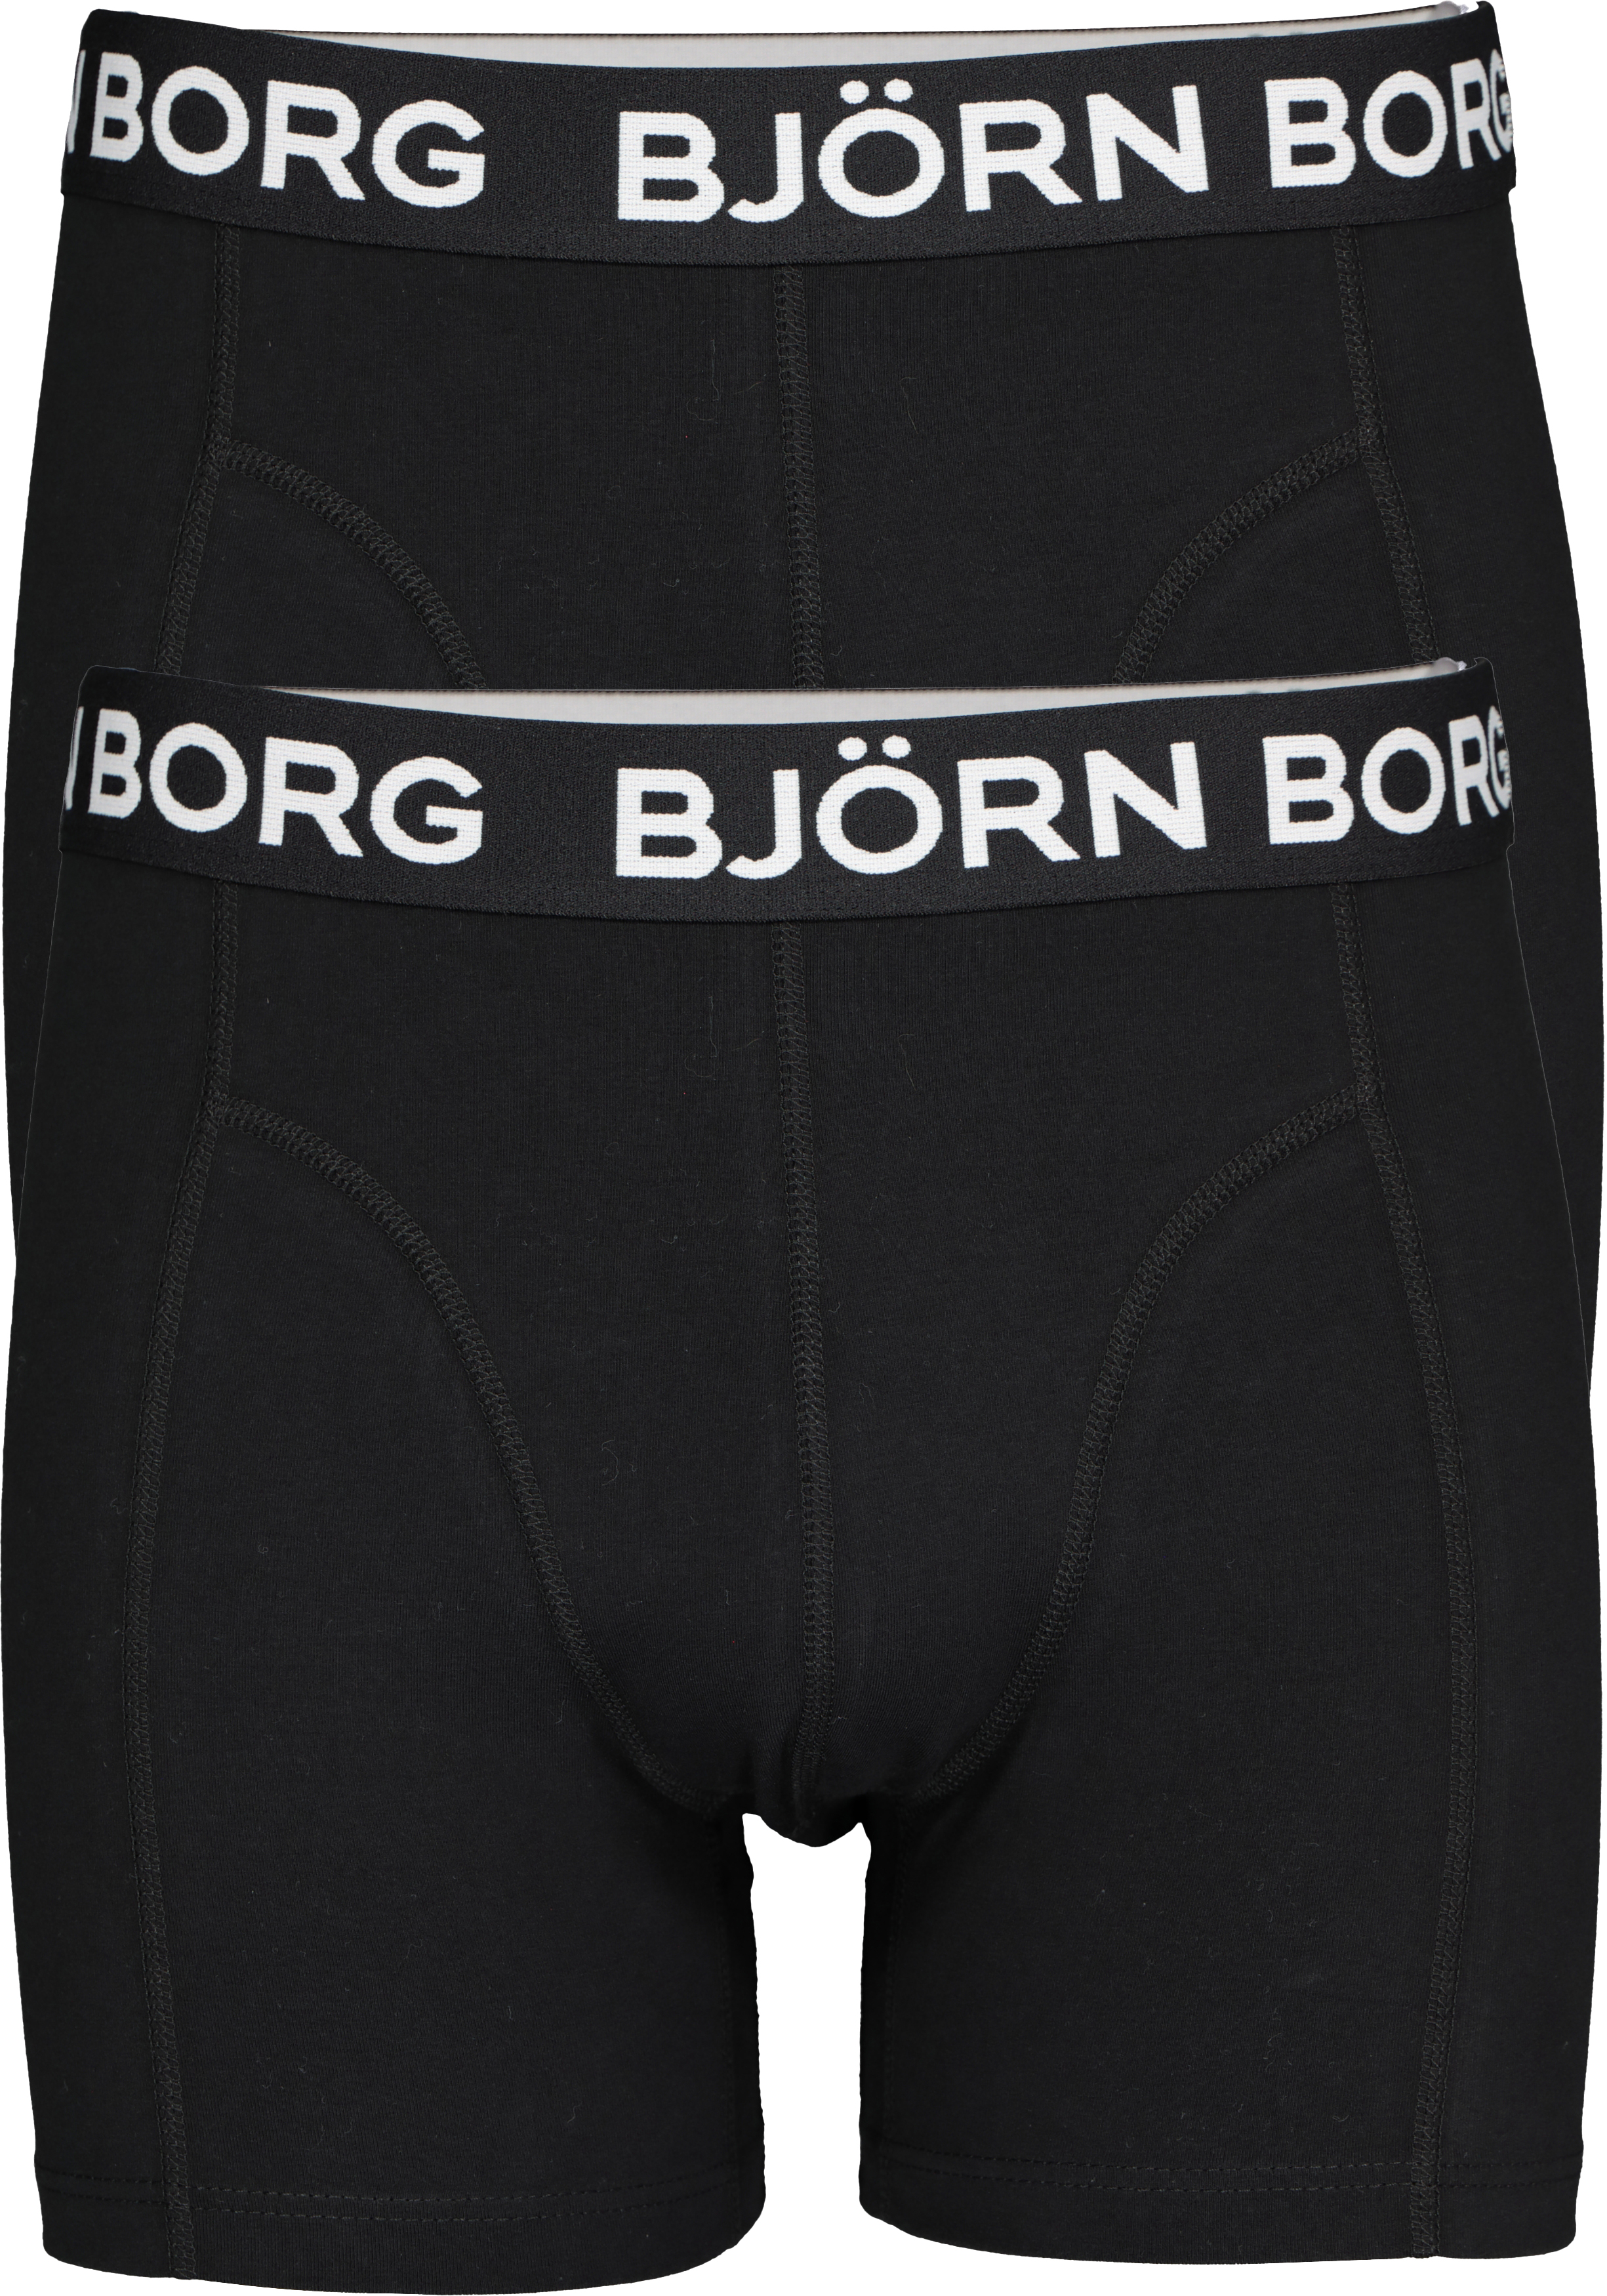 Doorzichtig Bruidegom Aanval Bjorn Borg boxershorts Core (2-pack), heren boxers normale lengte, zwart -  Shop de nieuwste voorjaarsmode